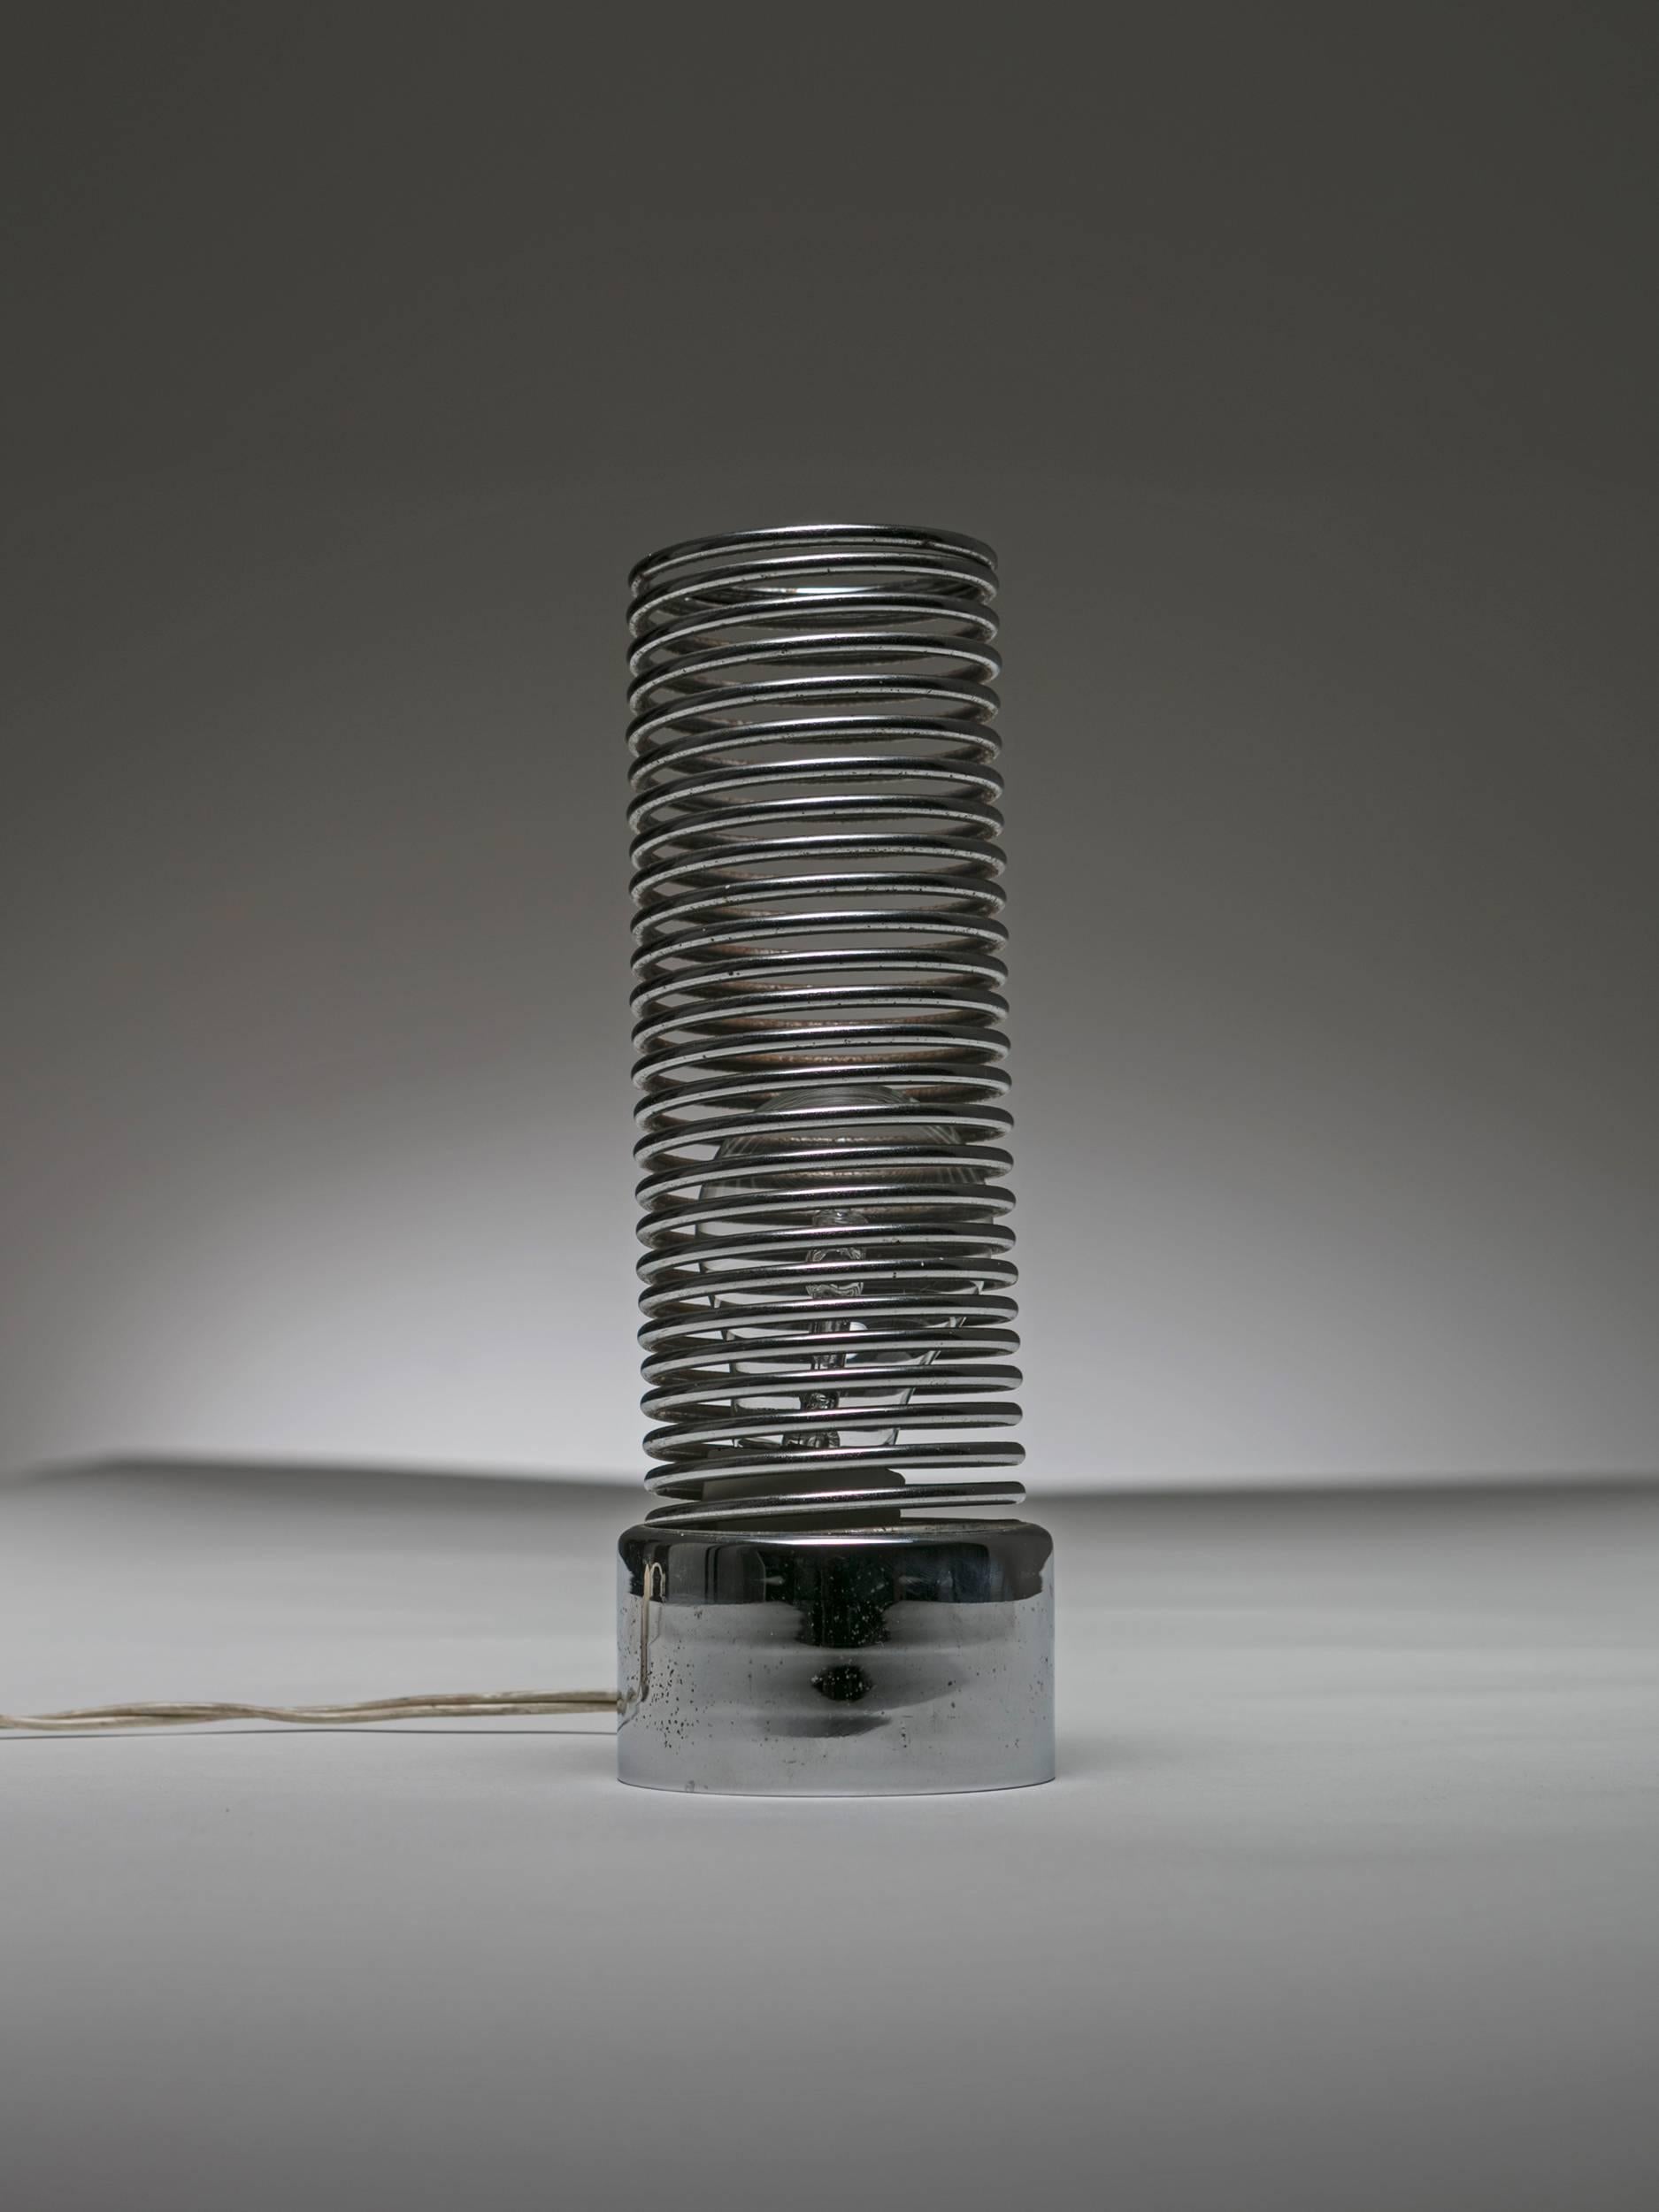 Lampe de table Spring par Harvey Guzzini.
Le socle en métal lourd accueille l'ampoule dont la lumière est diffusée en douceur le long du ressort métallique.